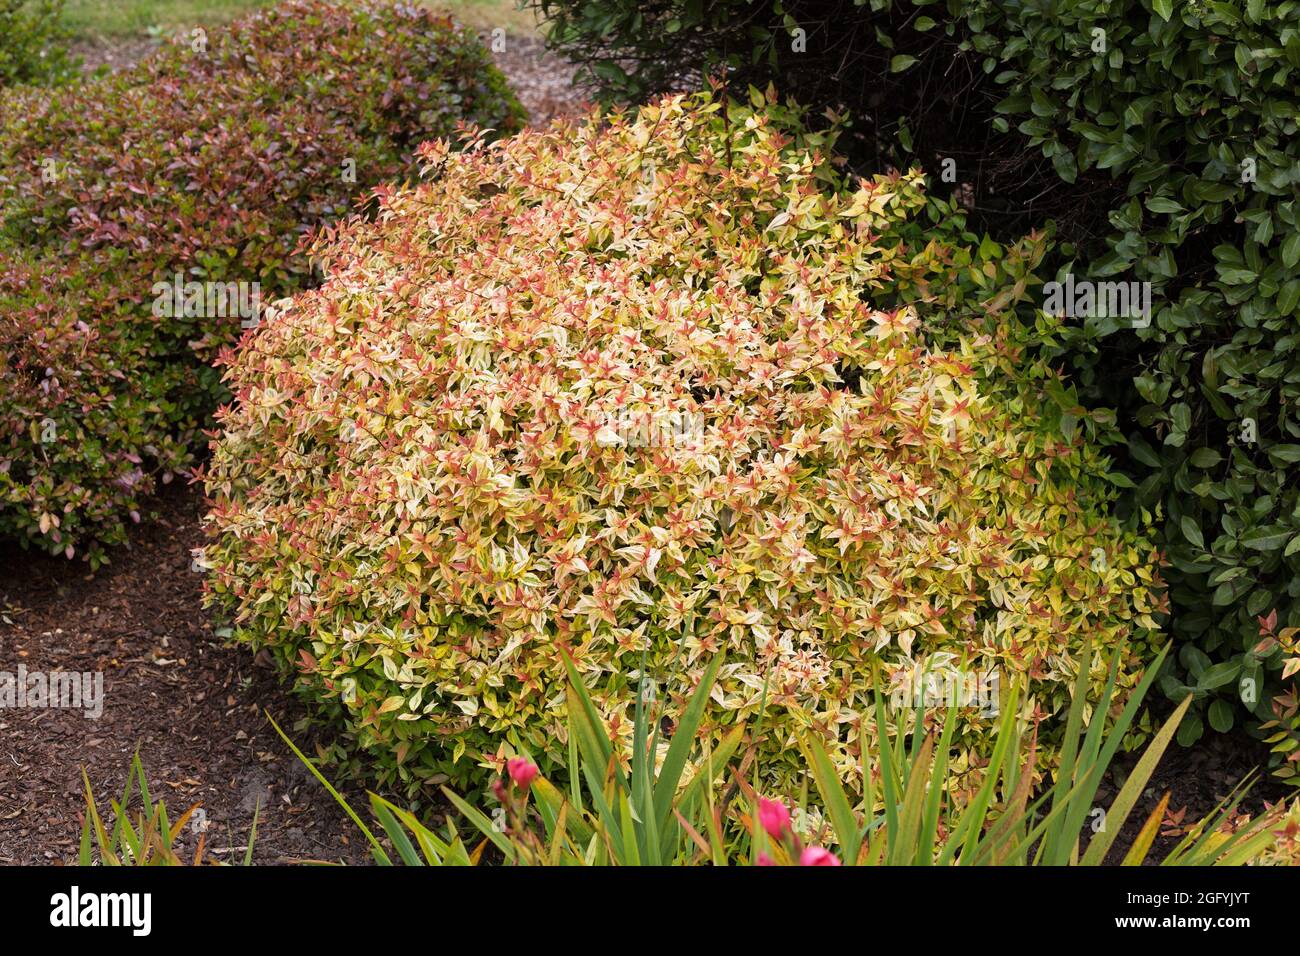 Abelia × grandiflora 'Kaleidoscope' - glossy abelia shrub. Stock Photo